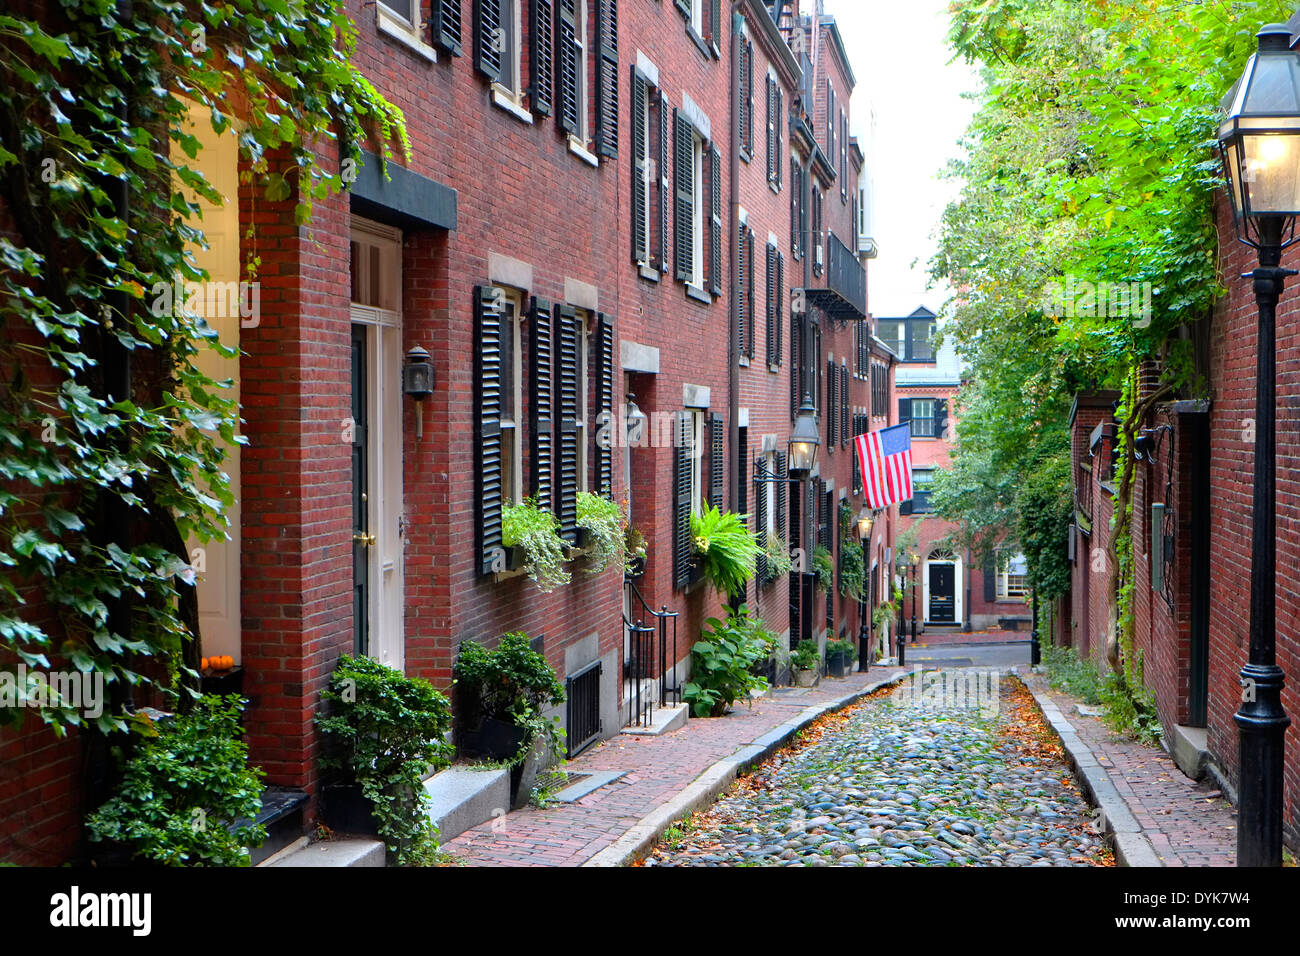 Historic Acorn Street on Beacon Hill in downtown Boston Massachusetts MA Stock Photo